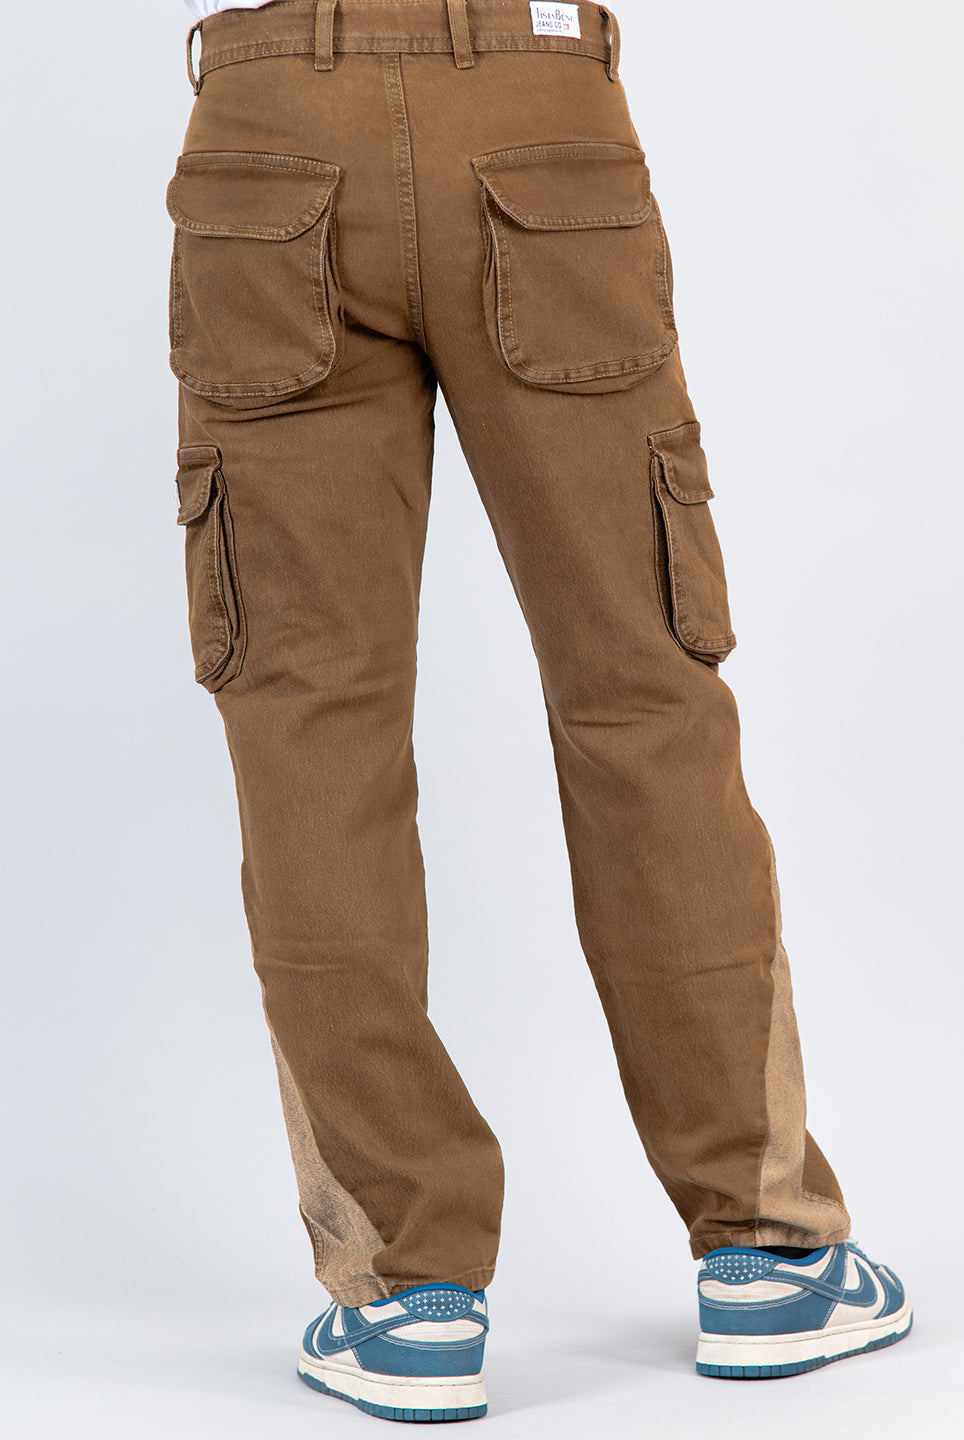 brown cargo denim jeans